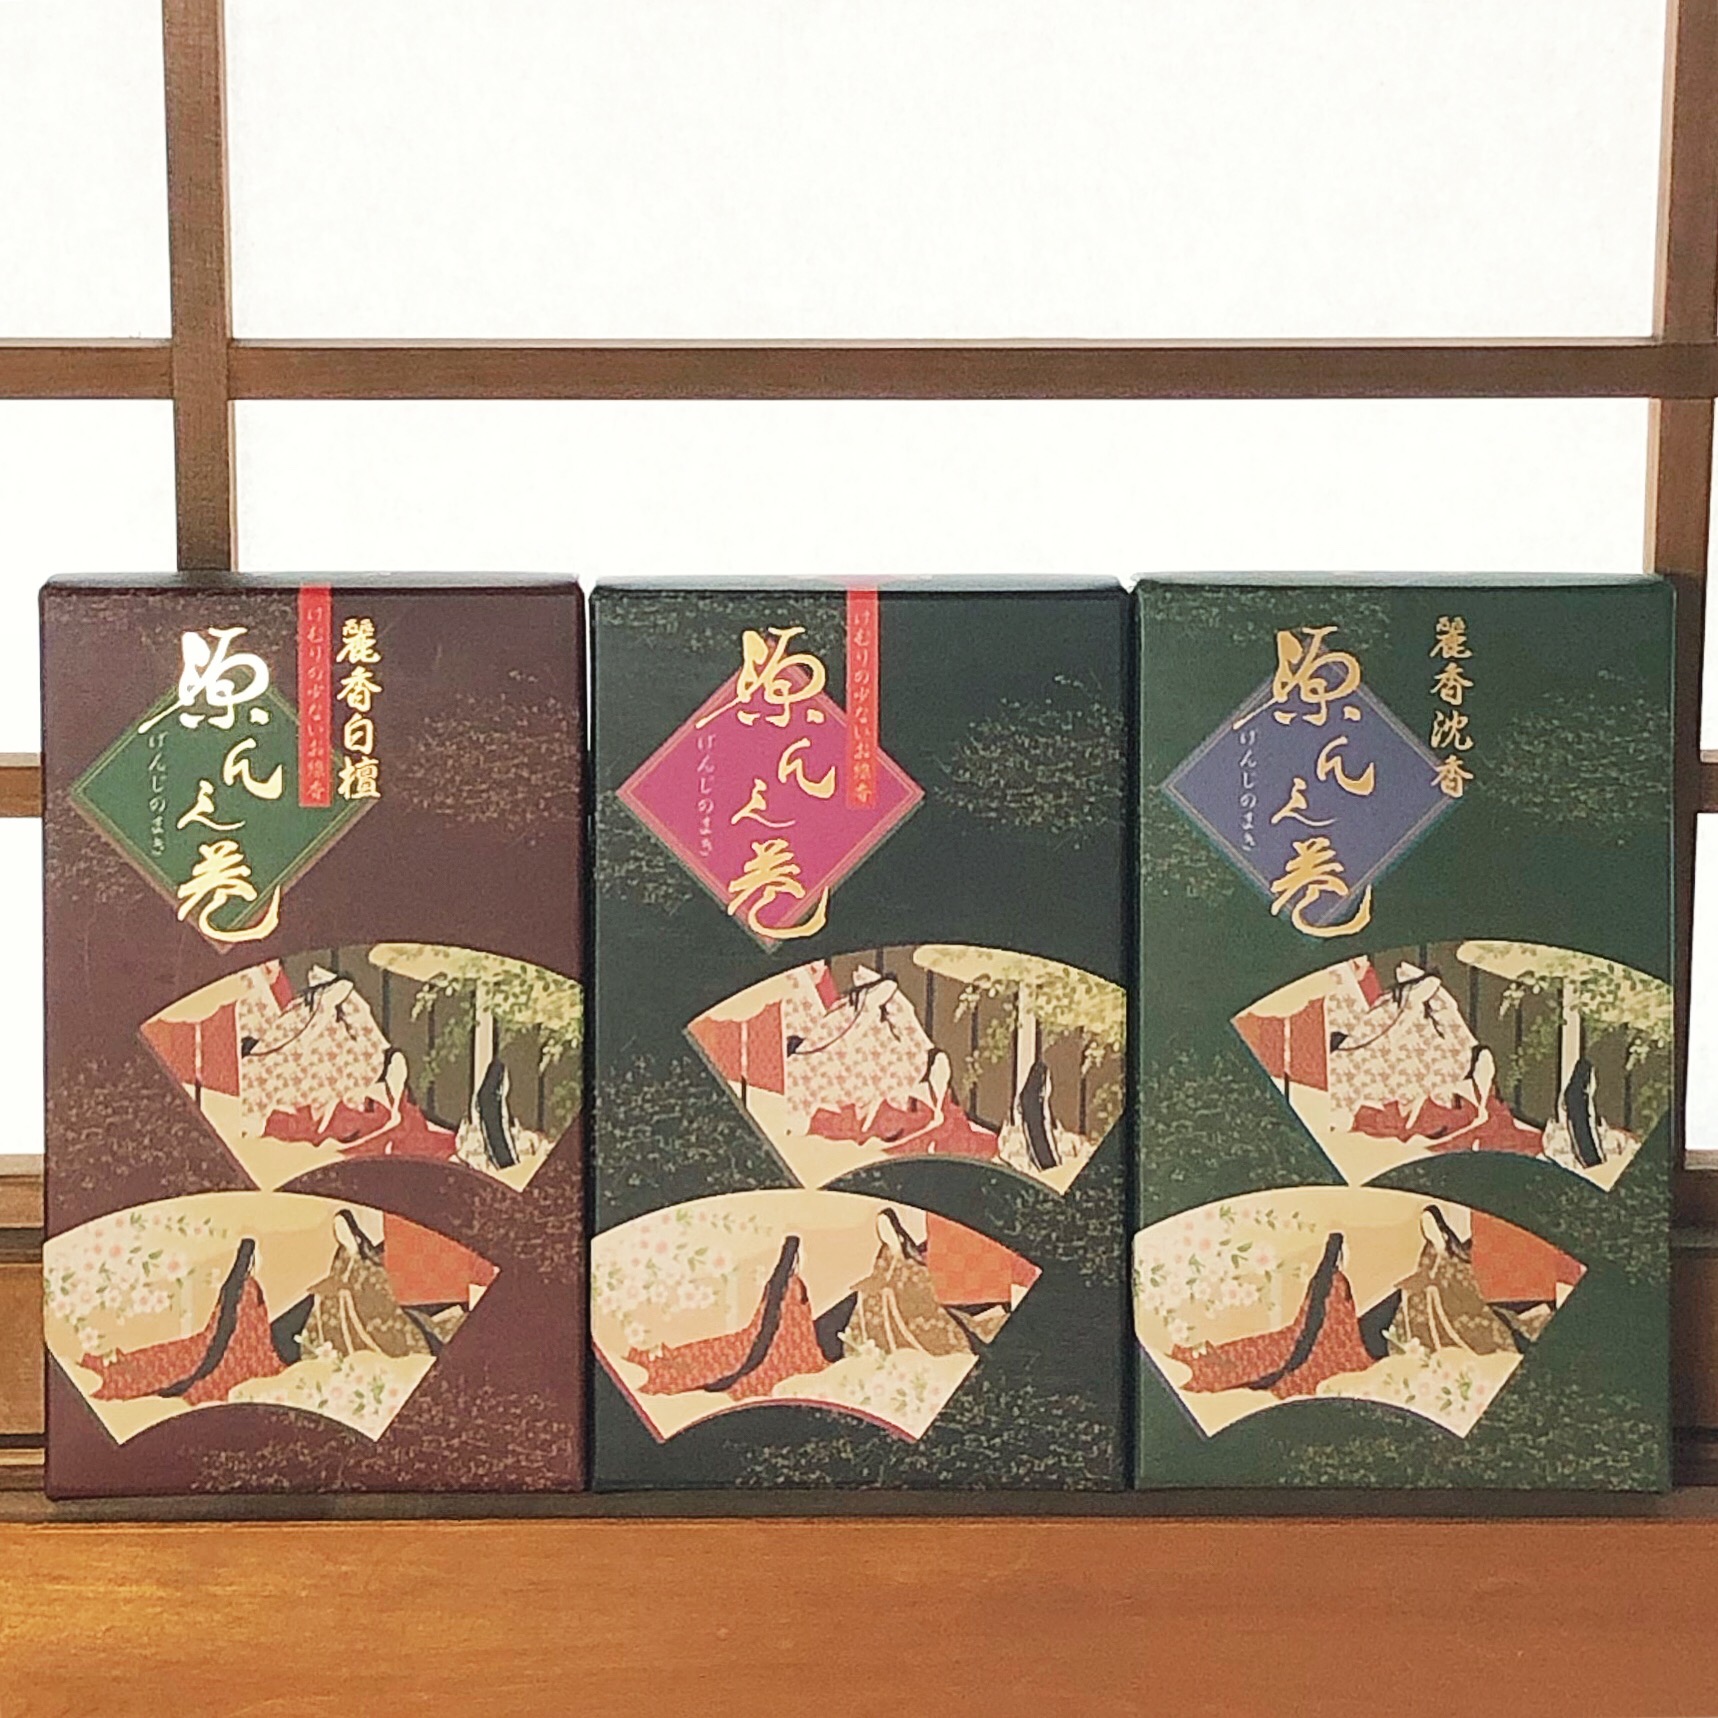 【香源 上野桜木店】源氏物語の世界をパッケージにあしらったお線香です。 海外の方へのプレゼントやご進物としても人気です✨